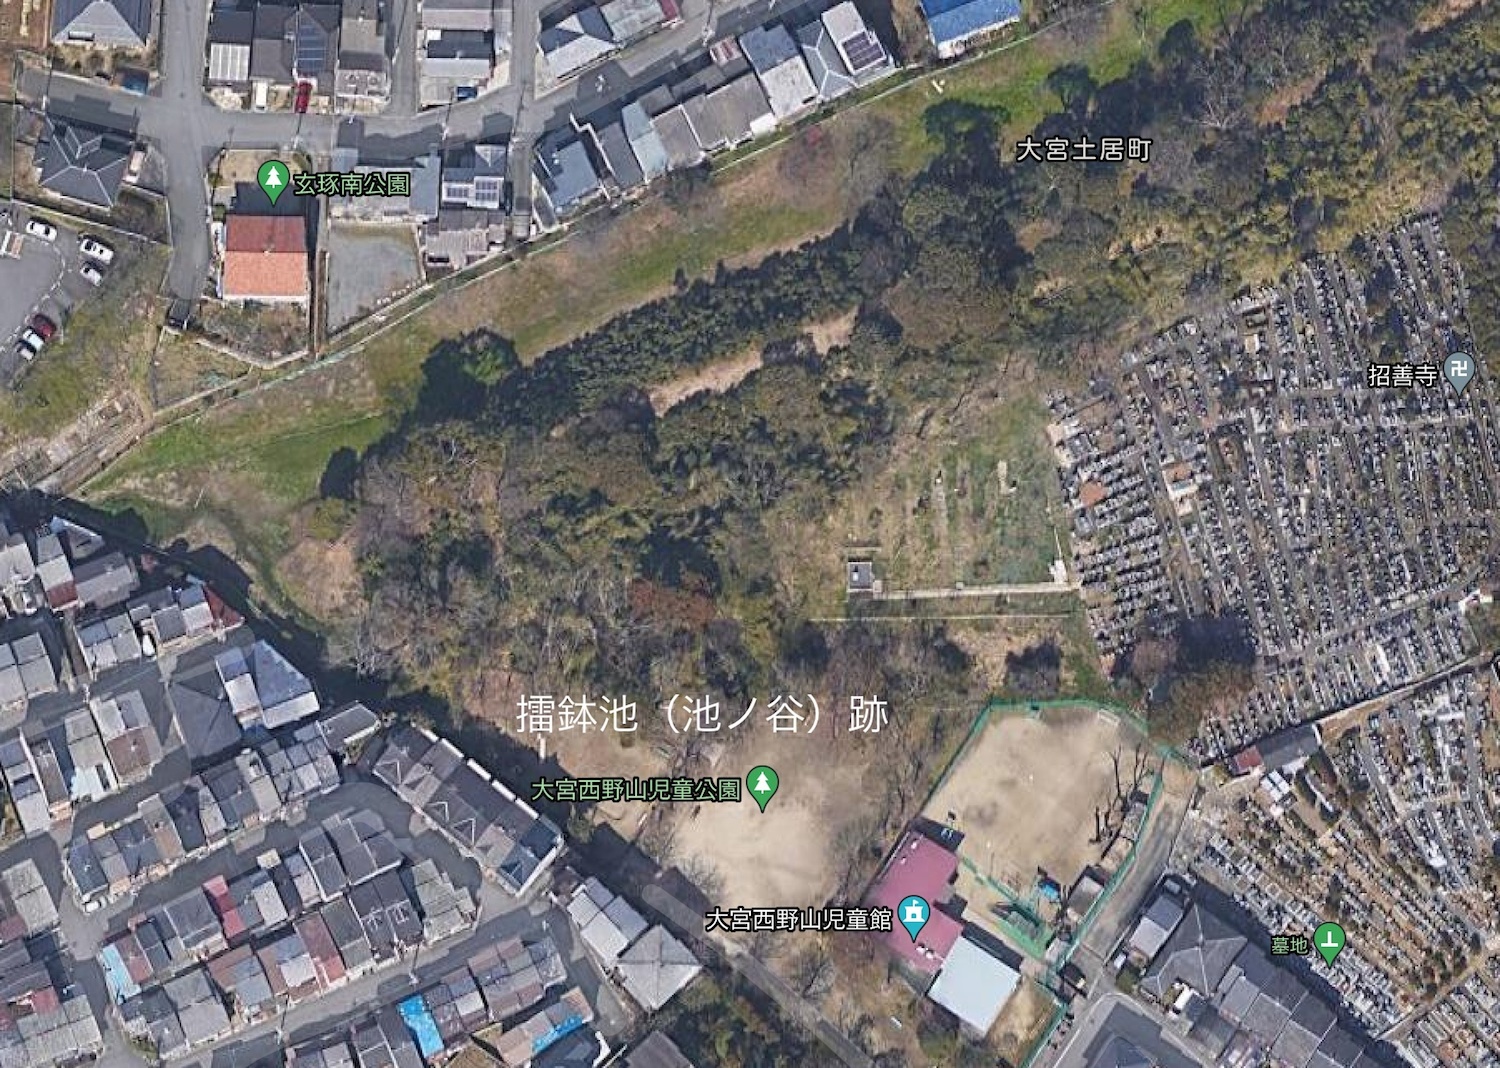 1:西野山児童公園:航空写真